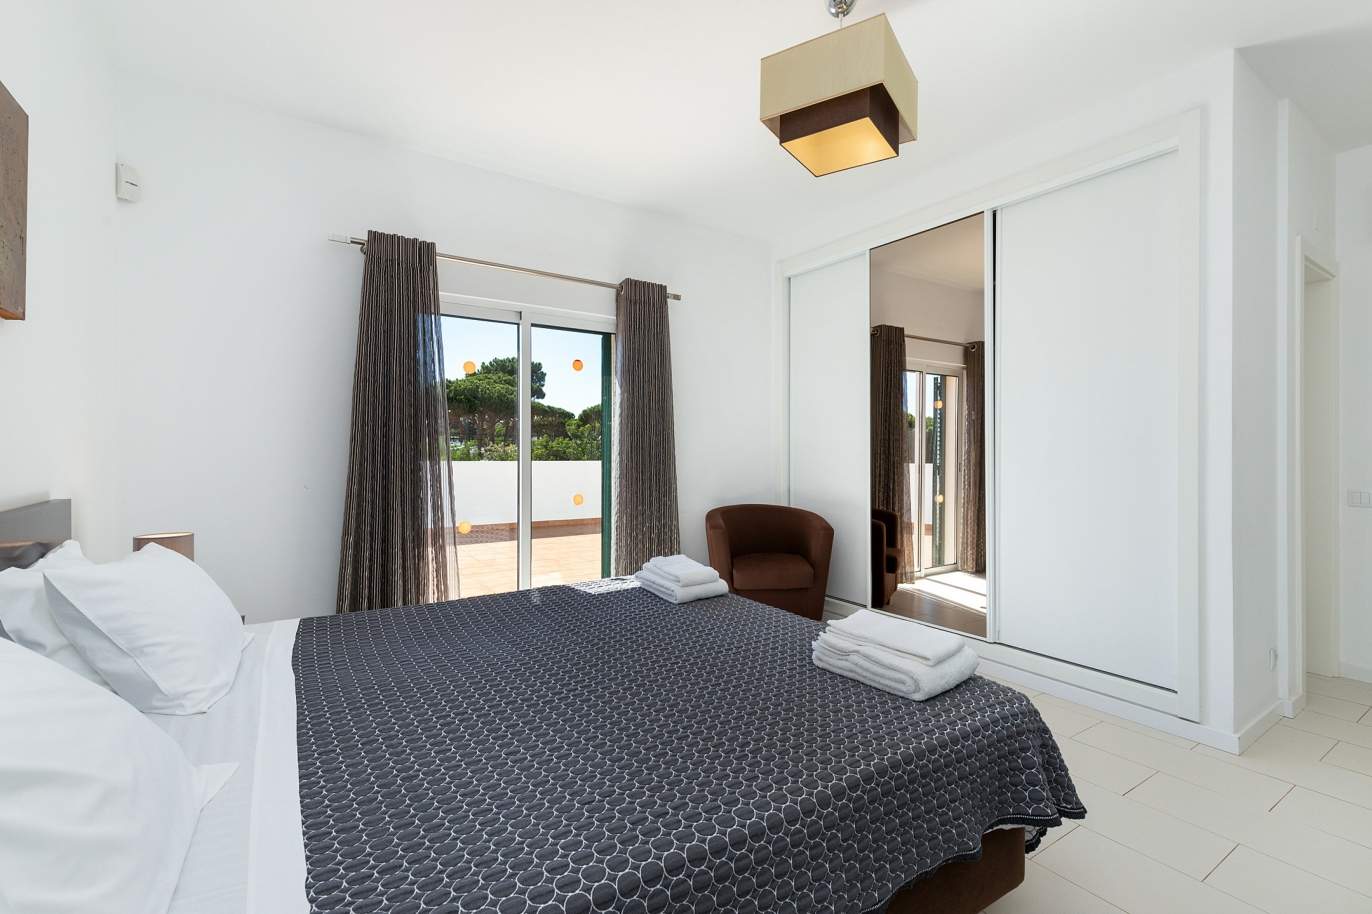 4 bedroom villa with pool and garden, Albufeira, Algarve_180572